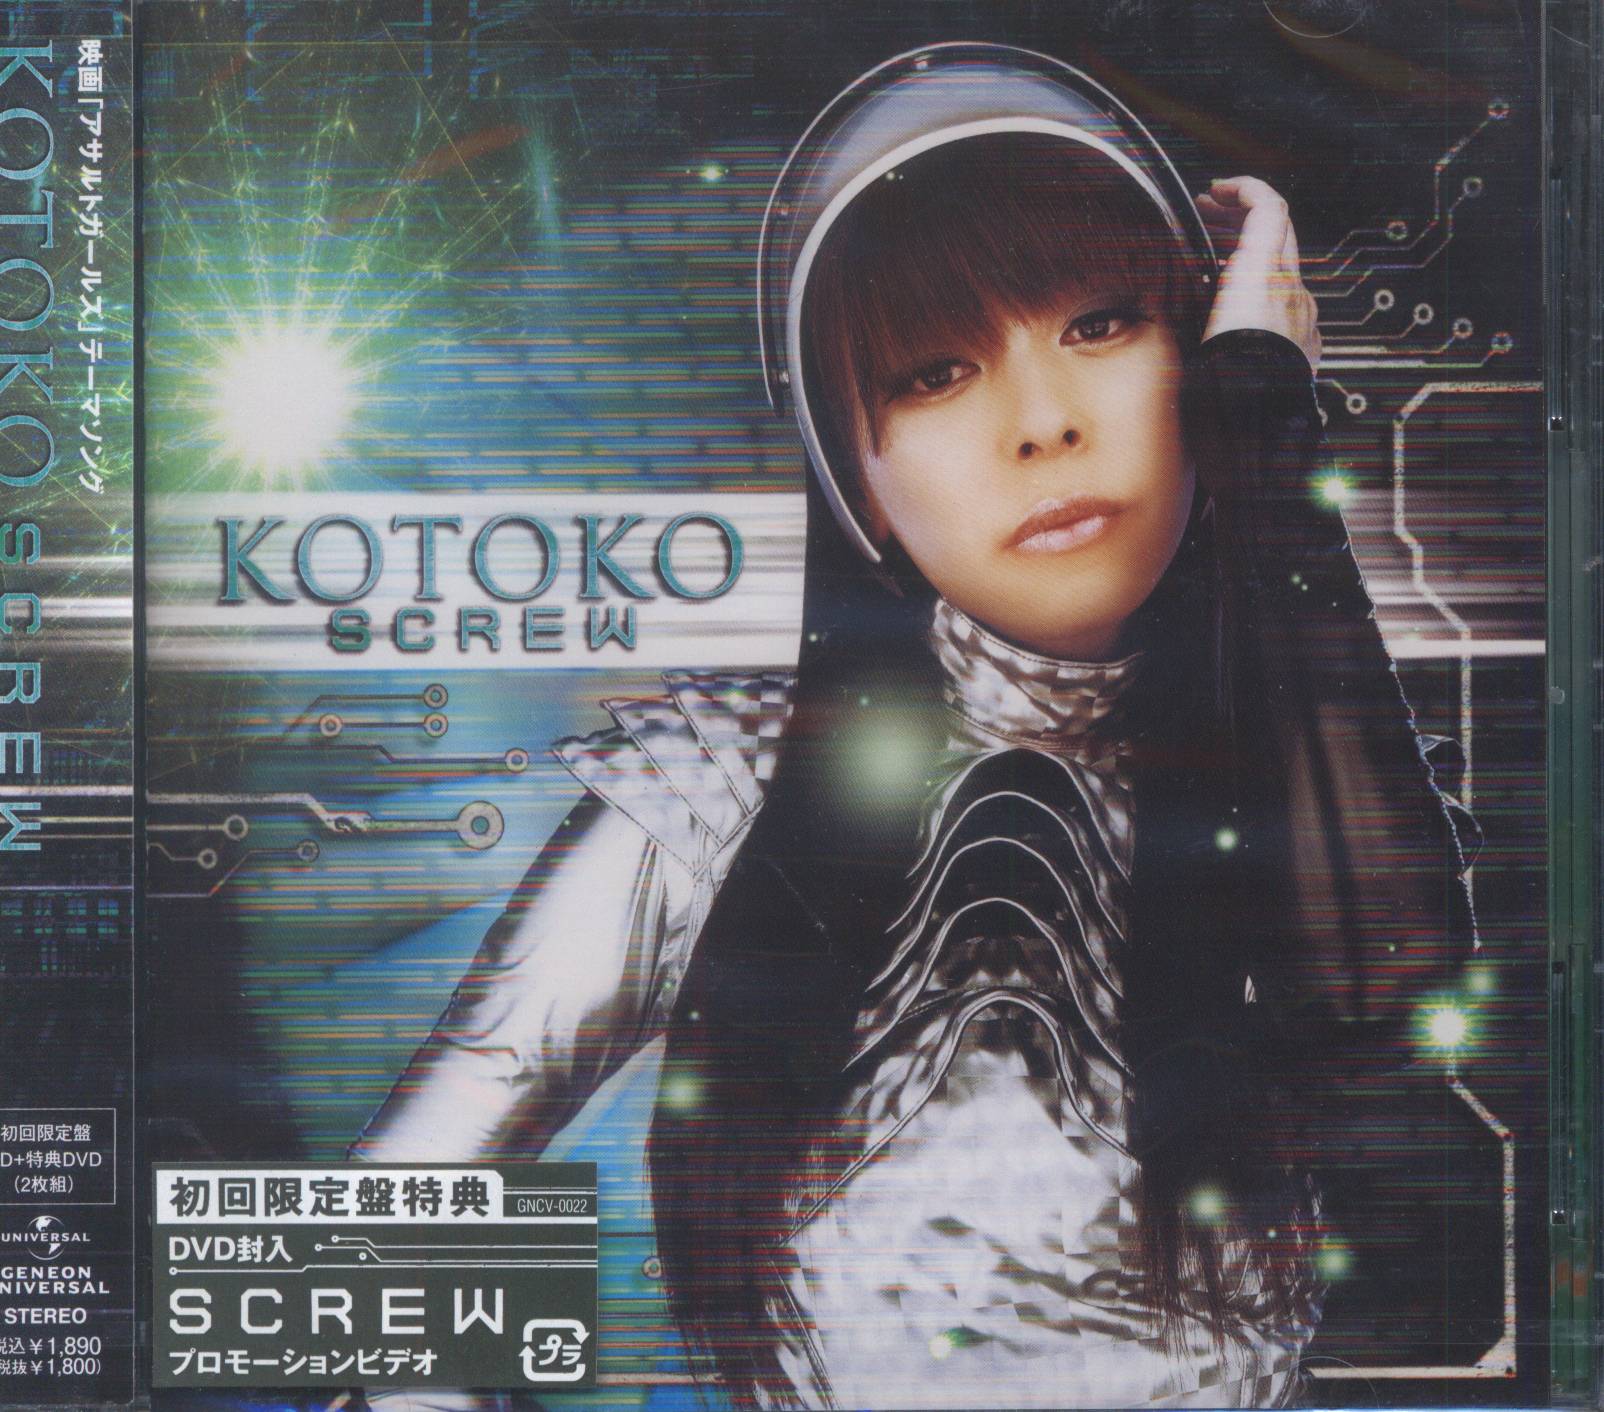 特撮CD 未開封 初回 KOTOKO DVD付限定盤)SCREW/映画アサルト・ガールズ ...